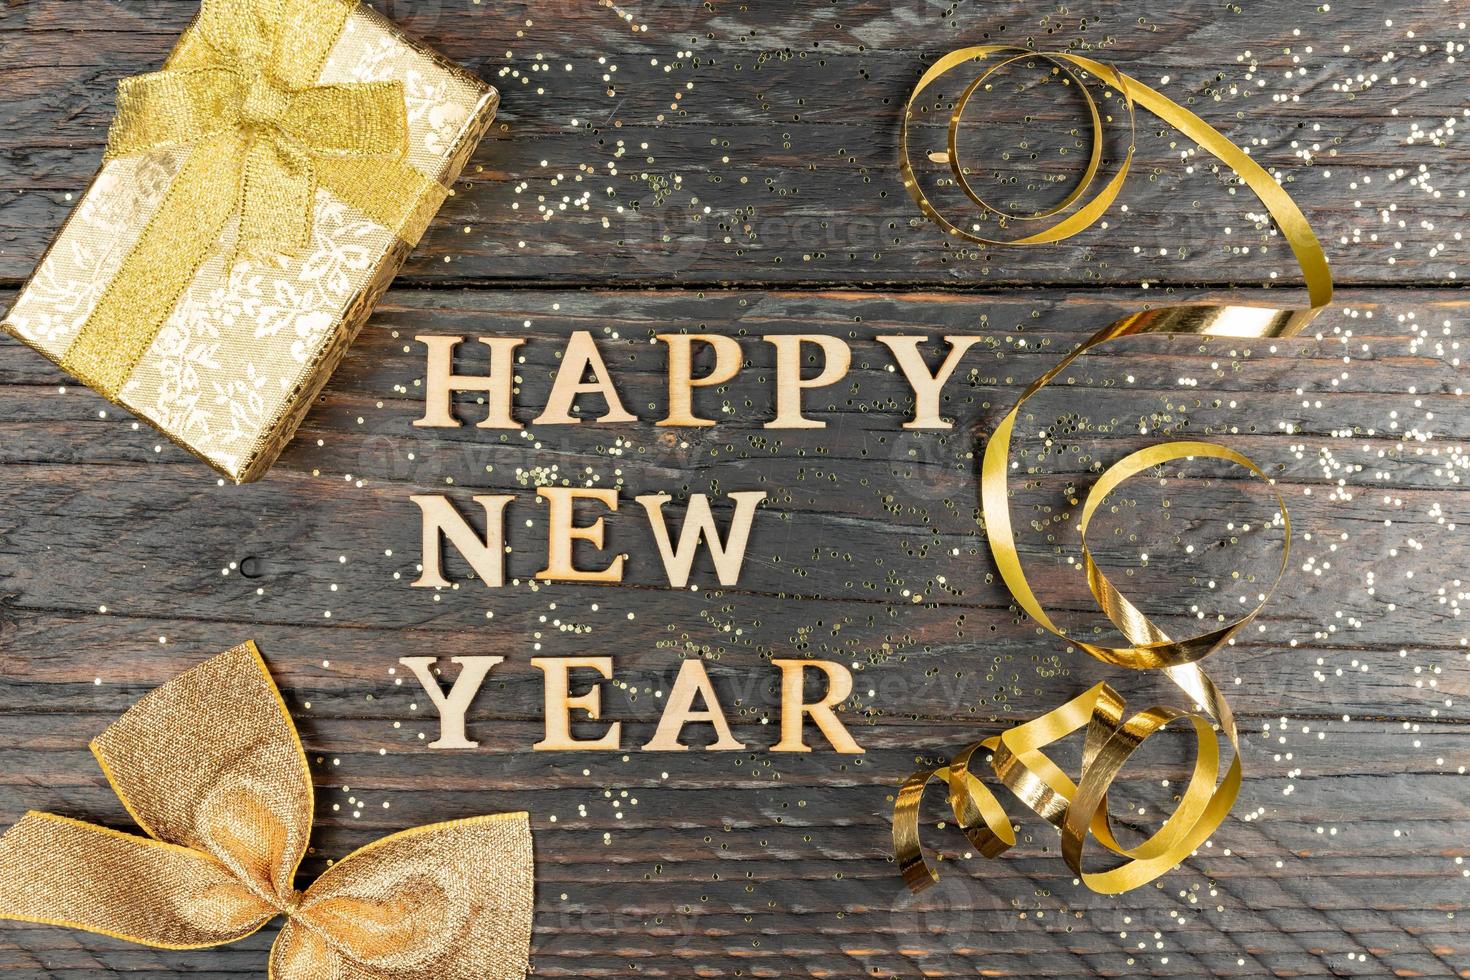 festliche grußkarte mit frohem neujahrstext auf holzboden mit goldfunkelndem konfetti und geschenkbox foto